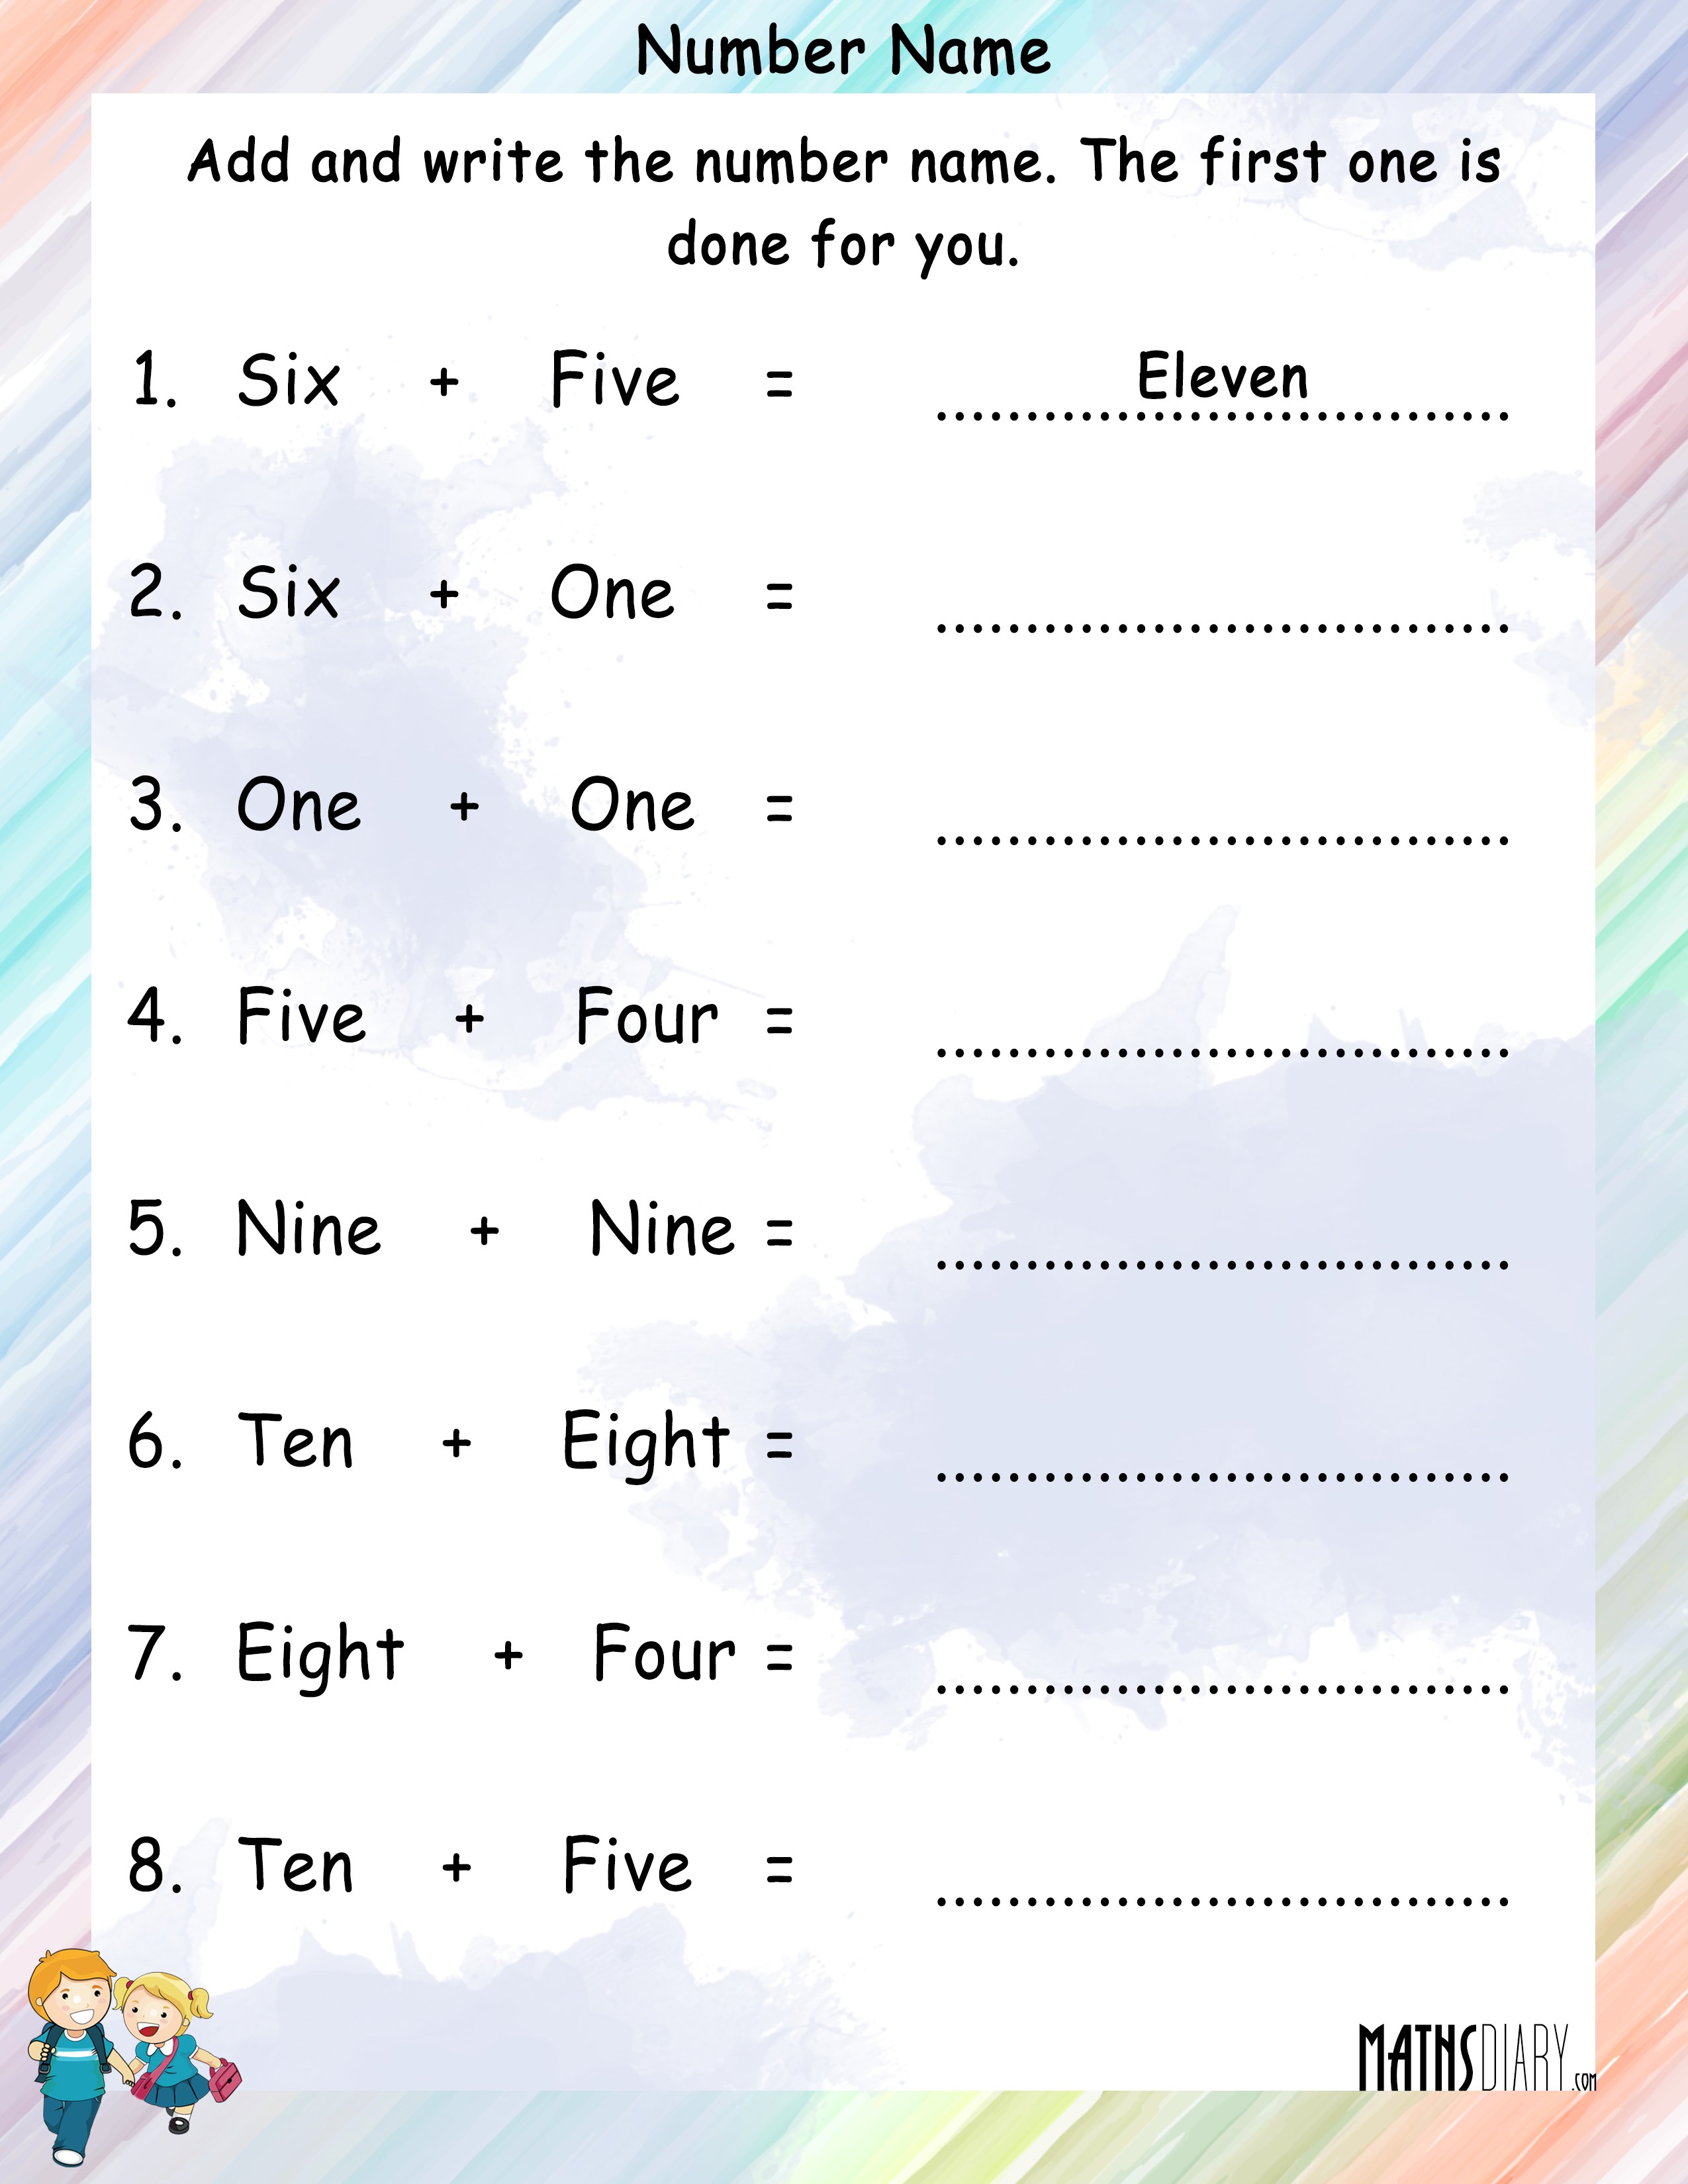 Number Names Worksheet For Grade 6